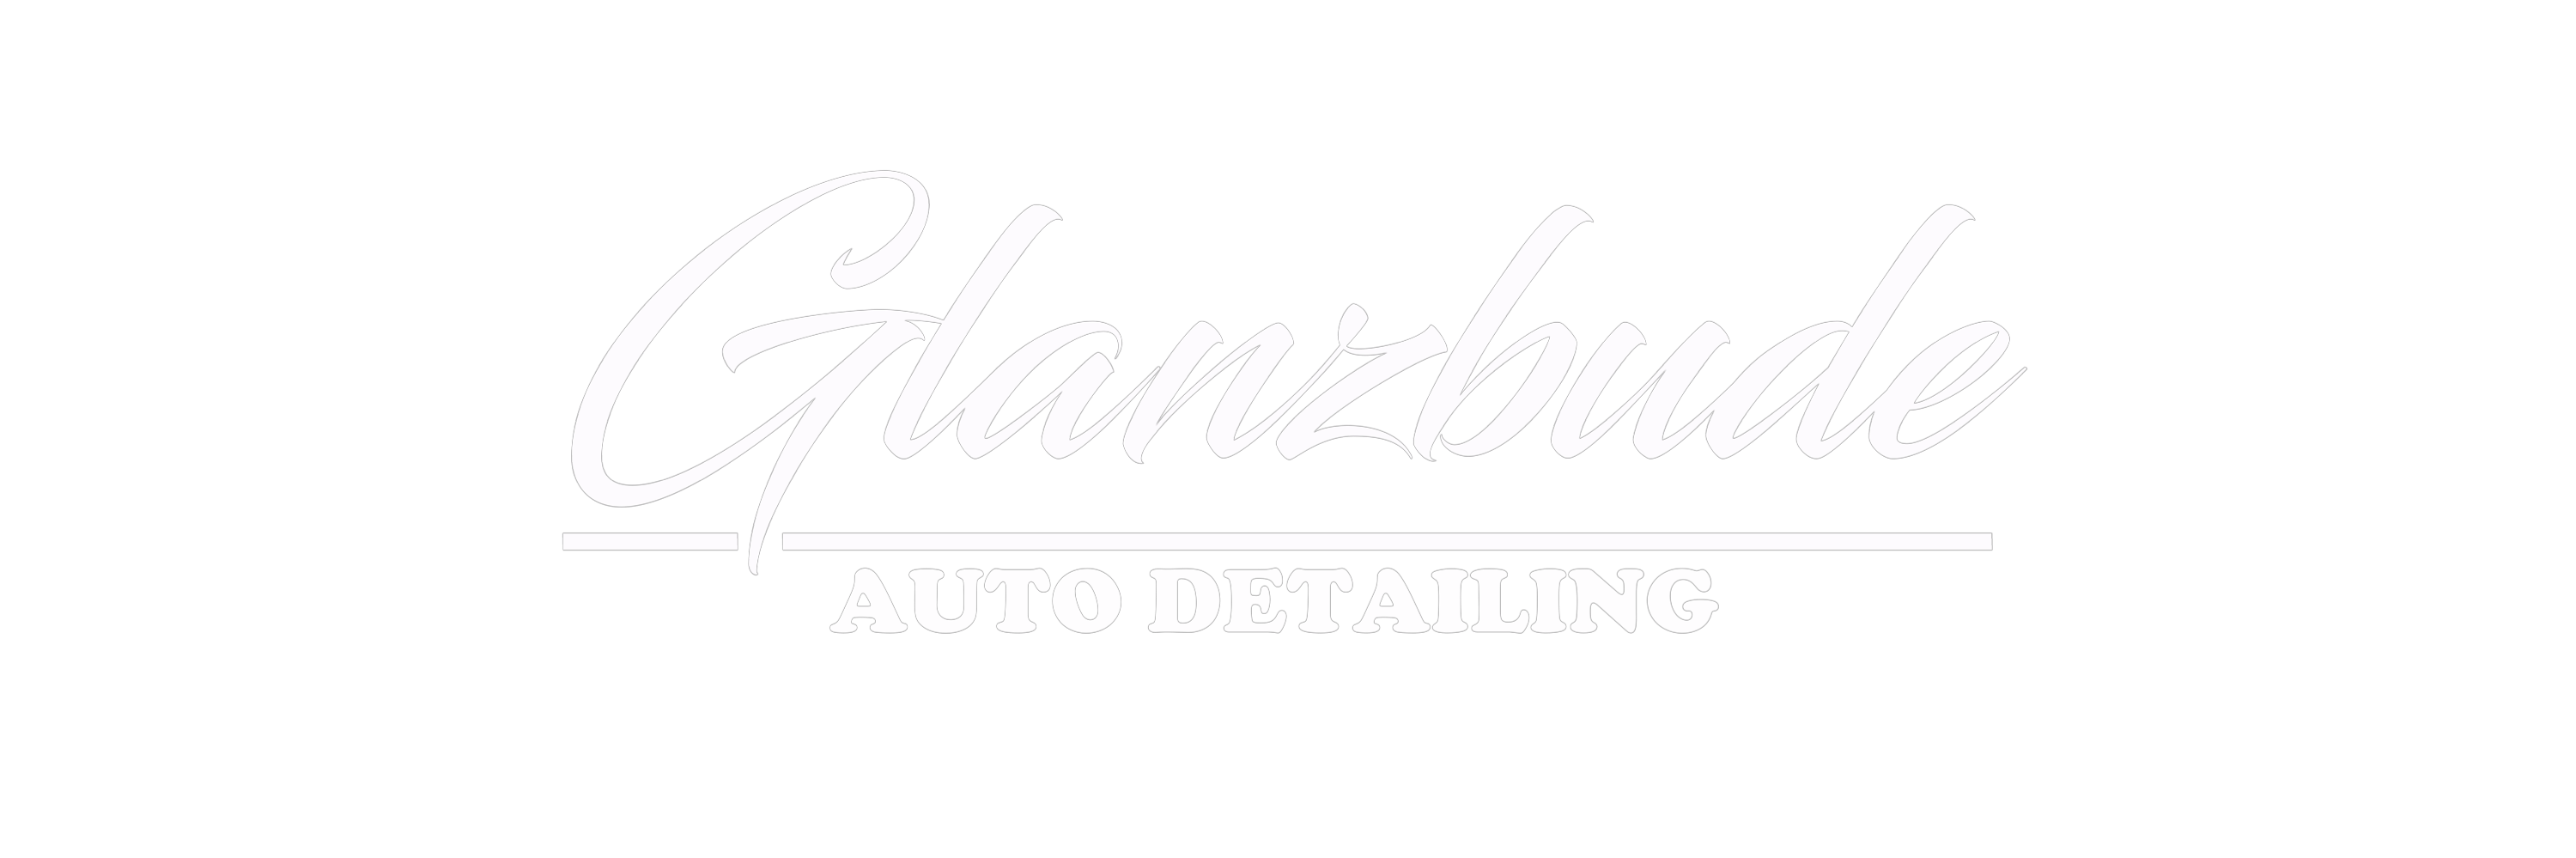 Glanzbude Auto Detailing